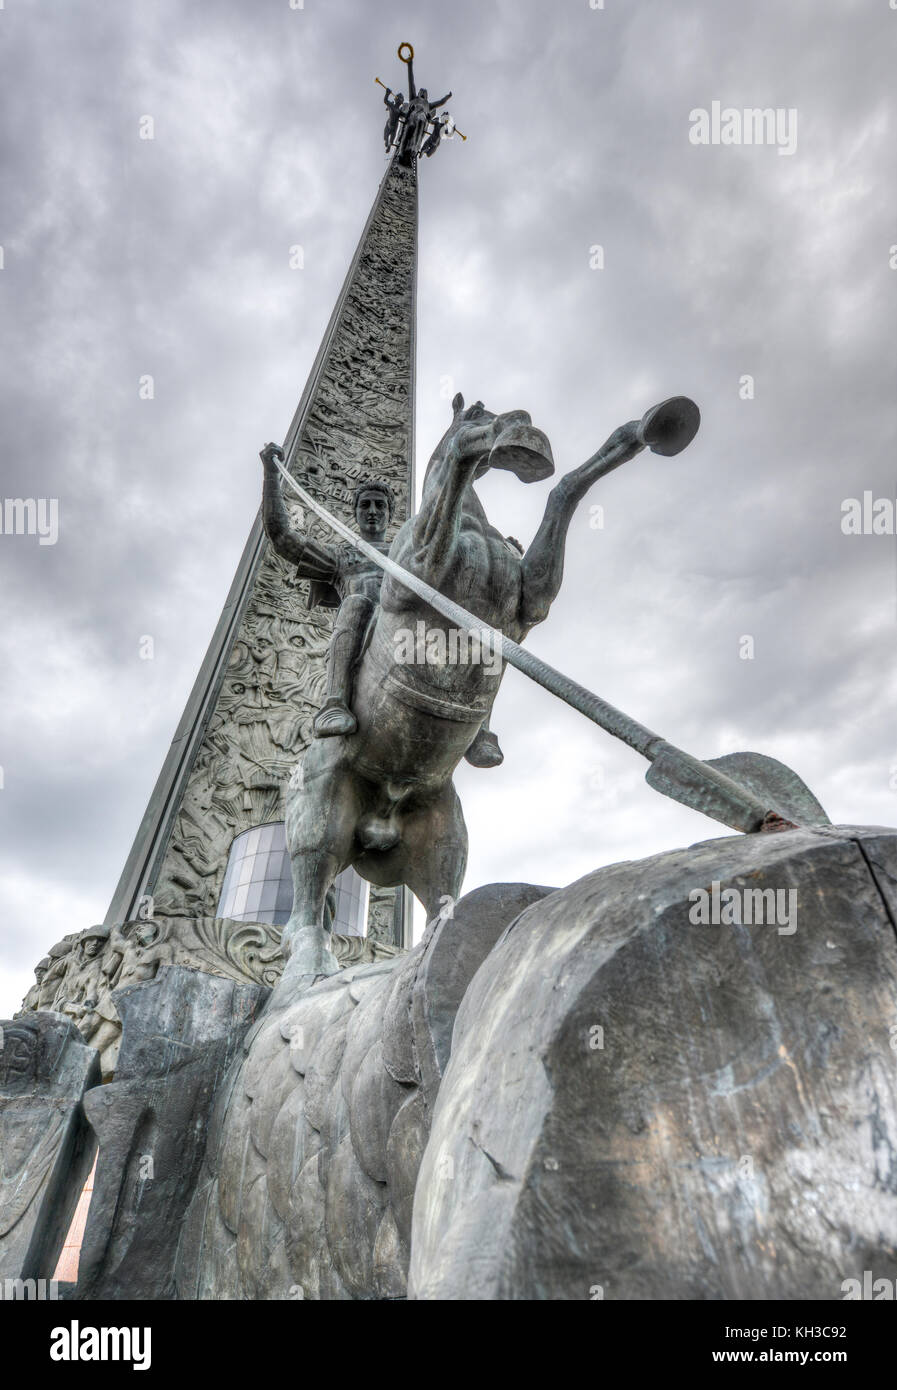 Colline poklonnaya obélisque, dans parc de la victoire, Moscou, Russie. statue de Nike sur haut avec saint Georges terrassant le dragon ci-dessous. commémorant la victoire ov Banque D'Images